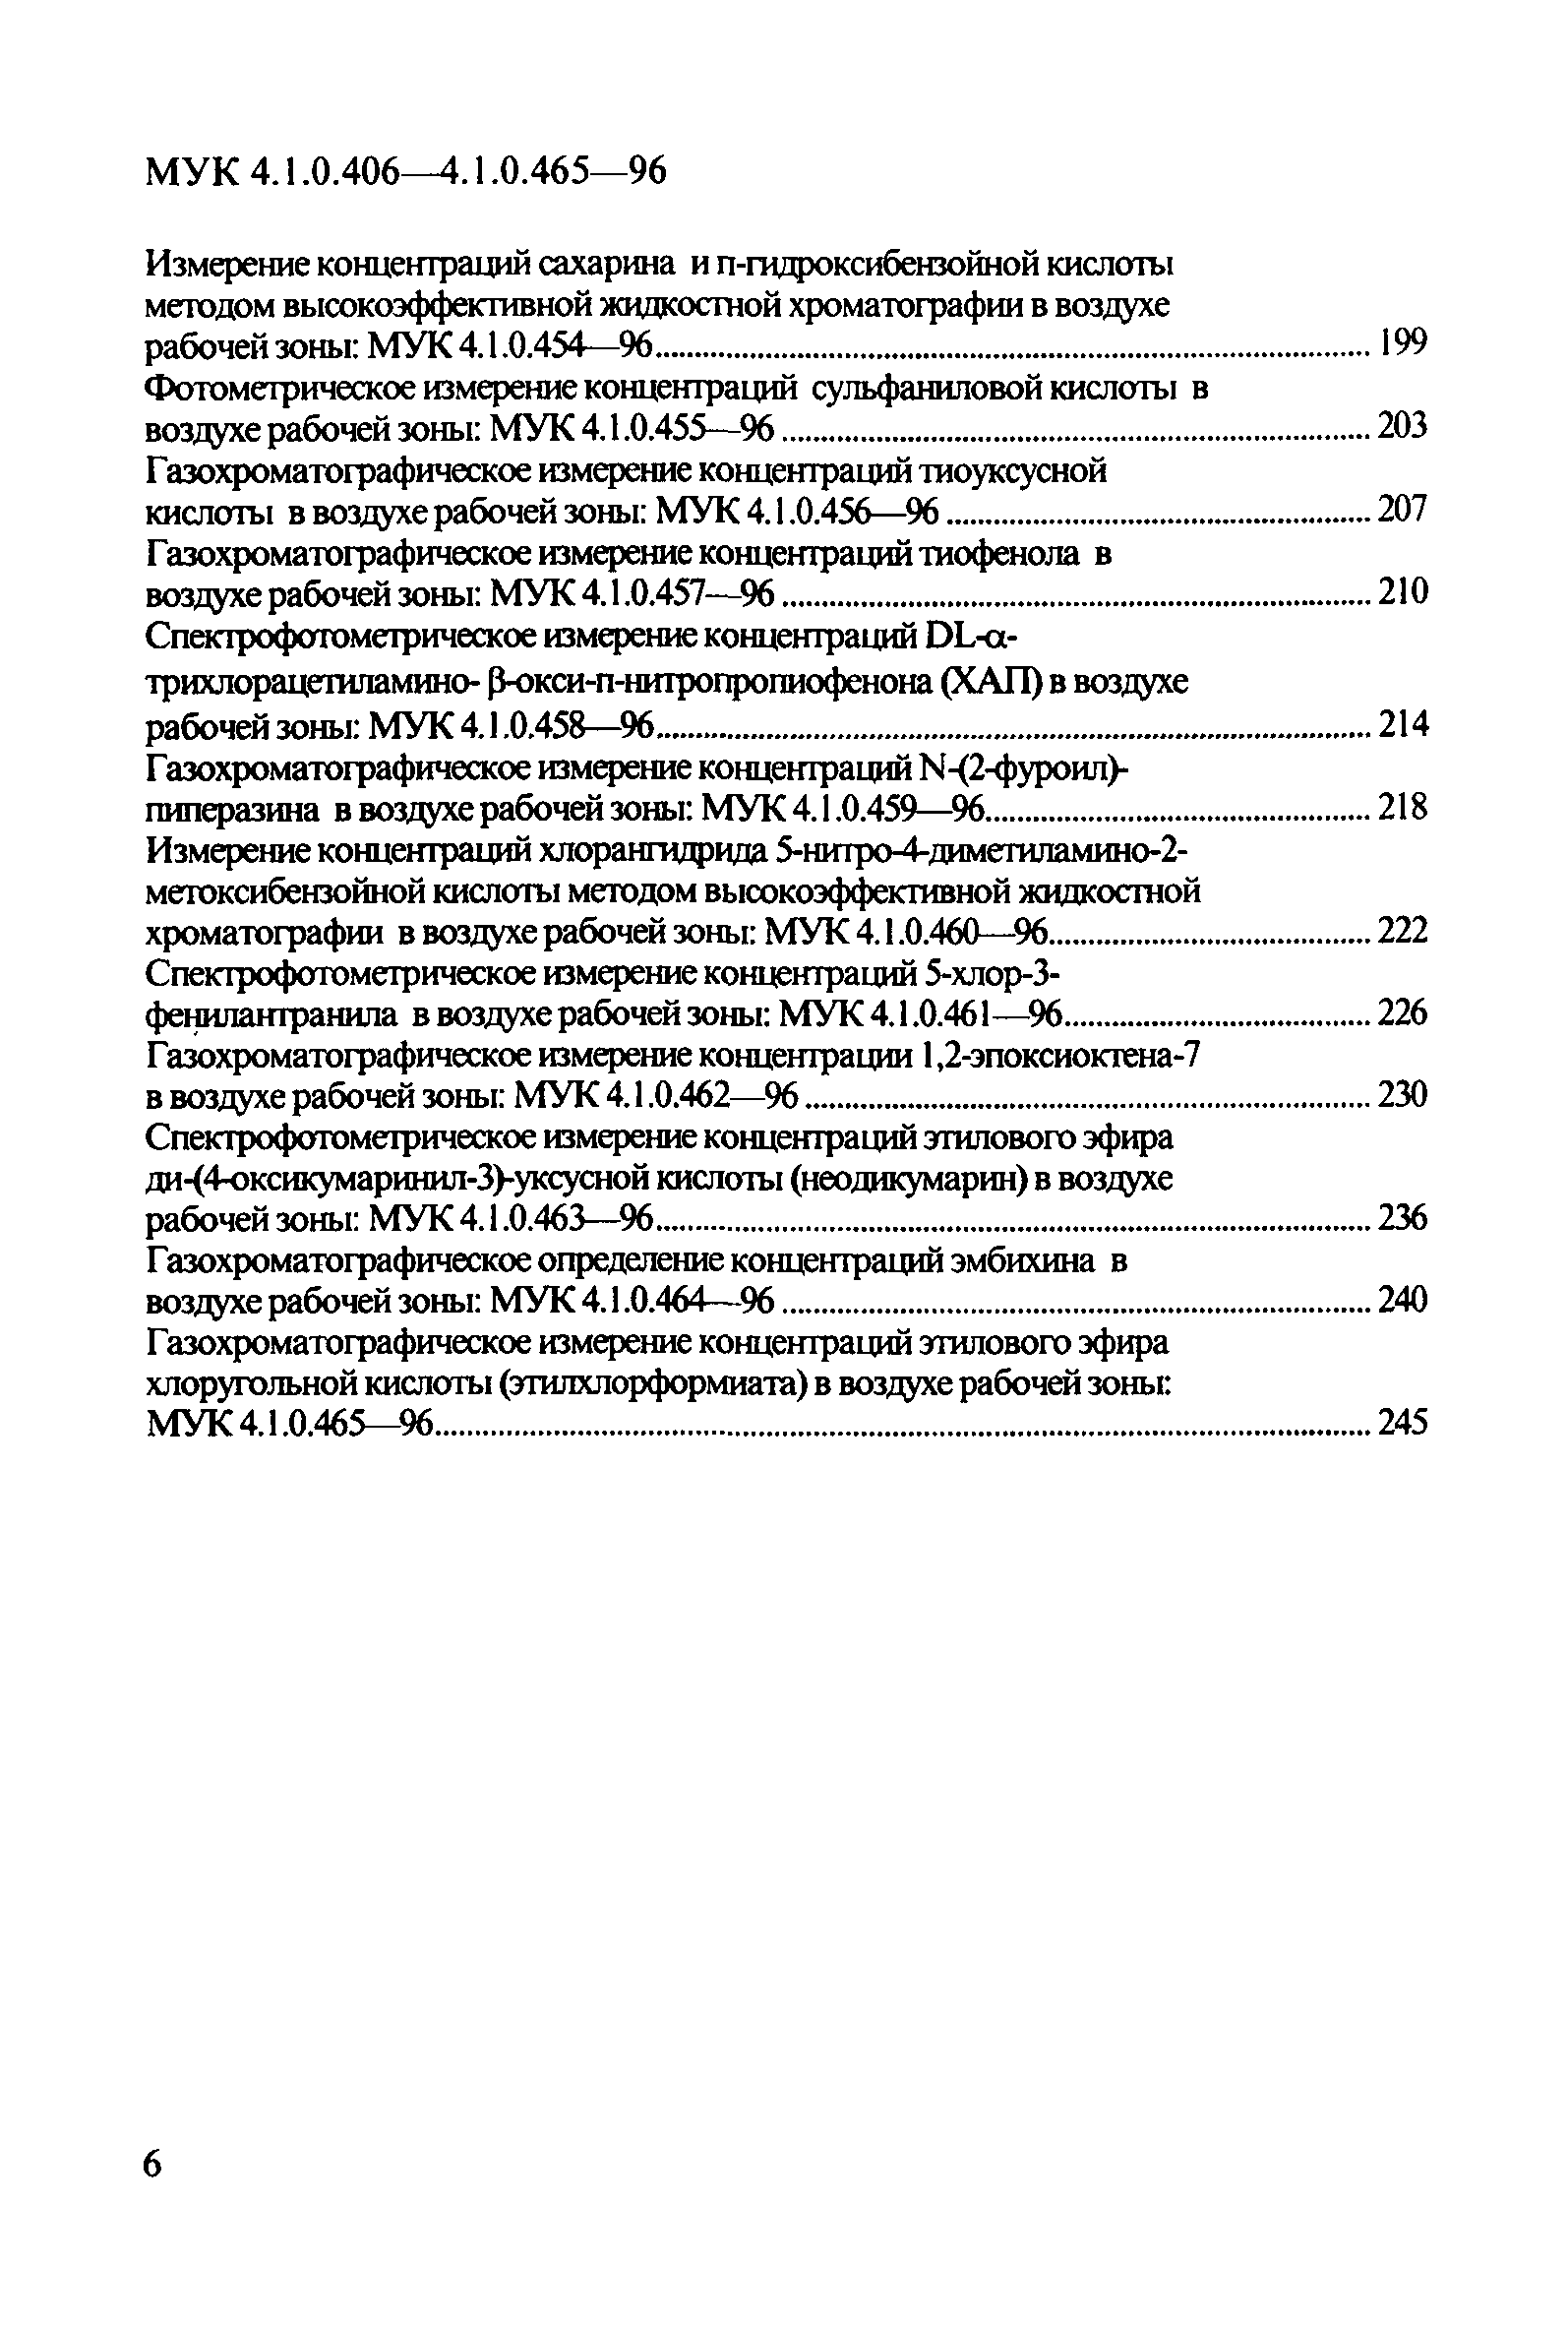 МУК 4.1.0.432-96